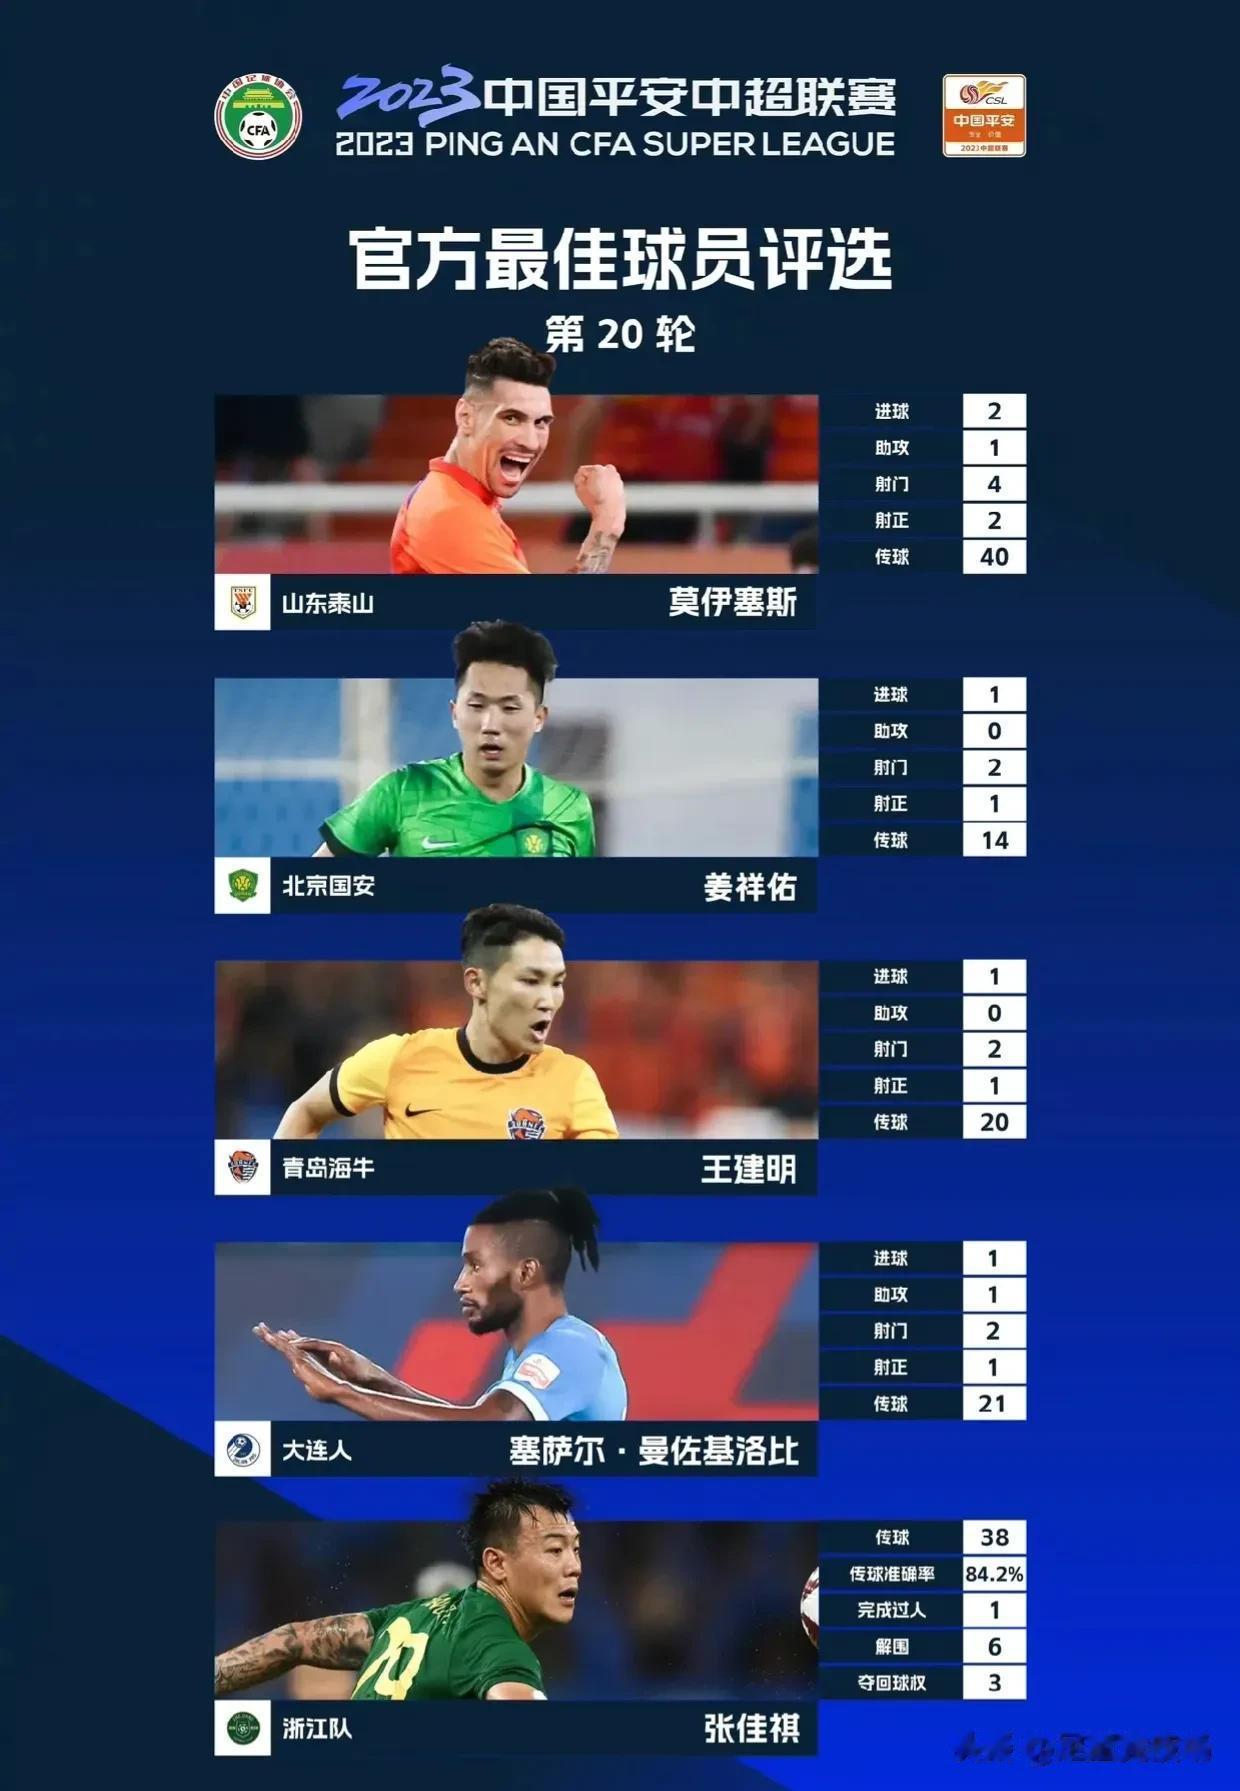 2023中国平安中超联赛第20轮官方最佳球员评选
入围本轮评选的五位球员是：
山(1)